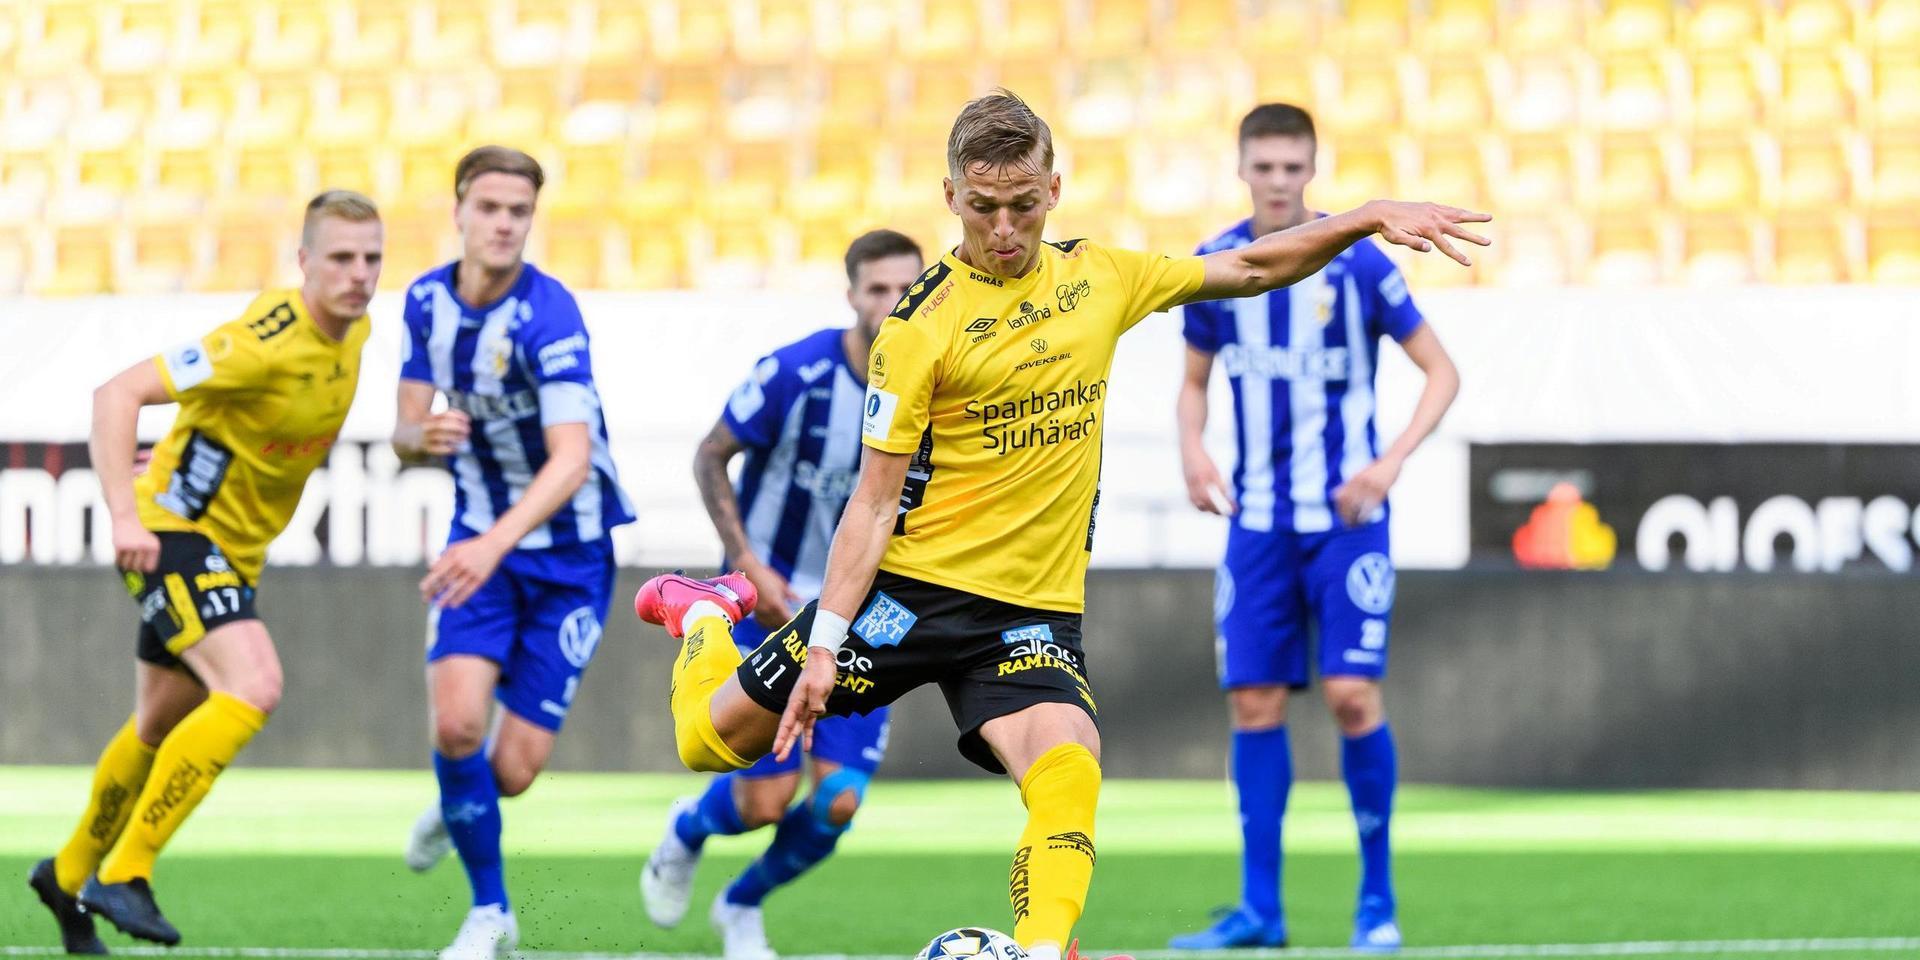 Elfsborgs Jesper Karlsson skjuter en straff under semifinalen i Svenska Cupen mellan Elfsborg och IFK Göteborg den 9 juli 2020 i Borås.